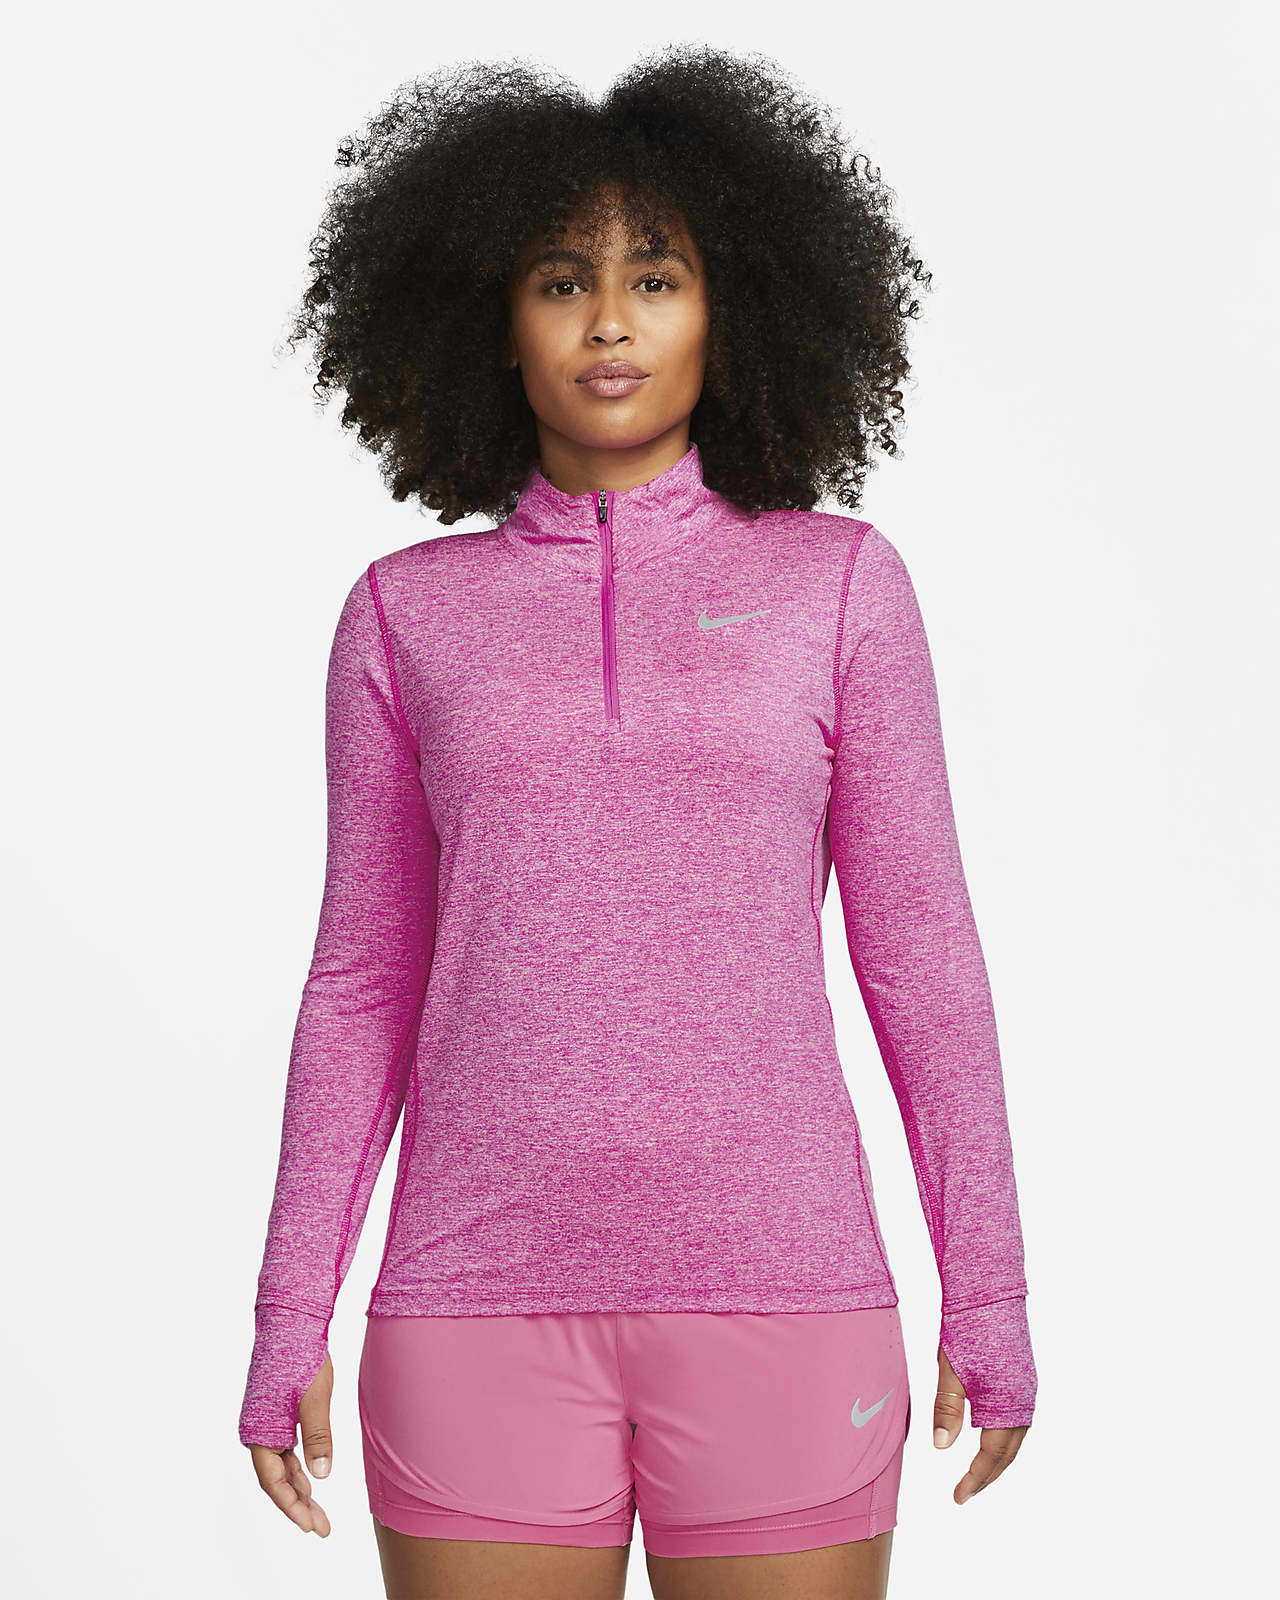 Camisola de running com fecho até meio Nike para mulher